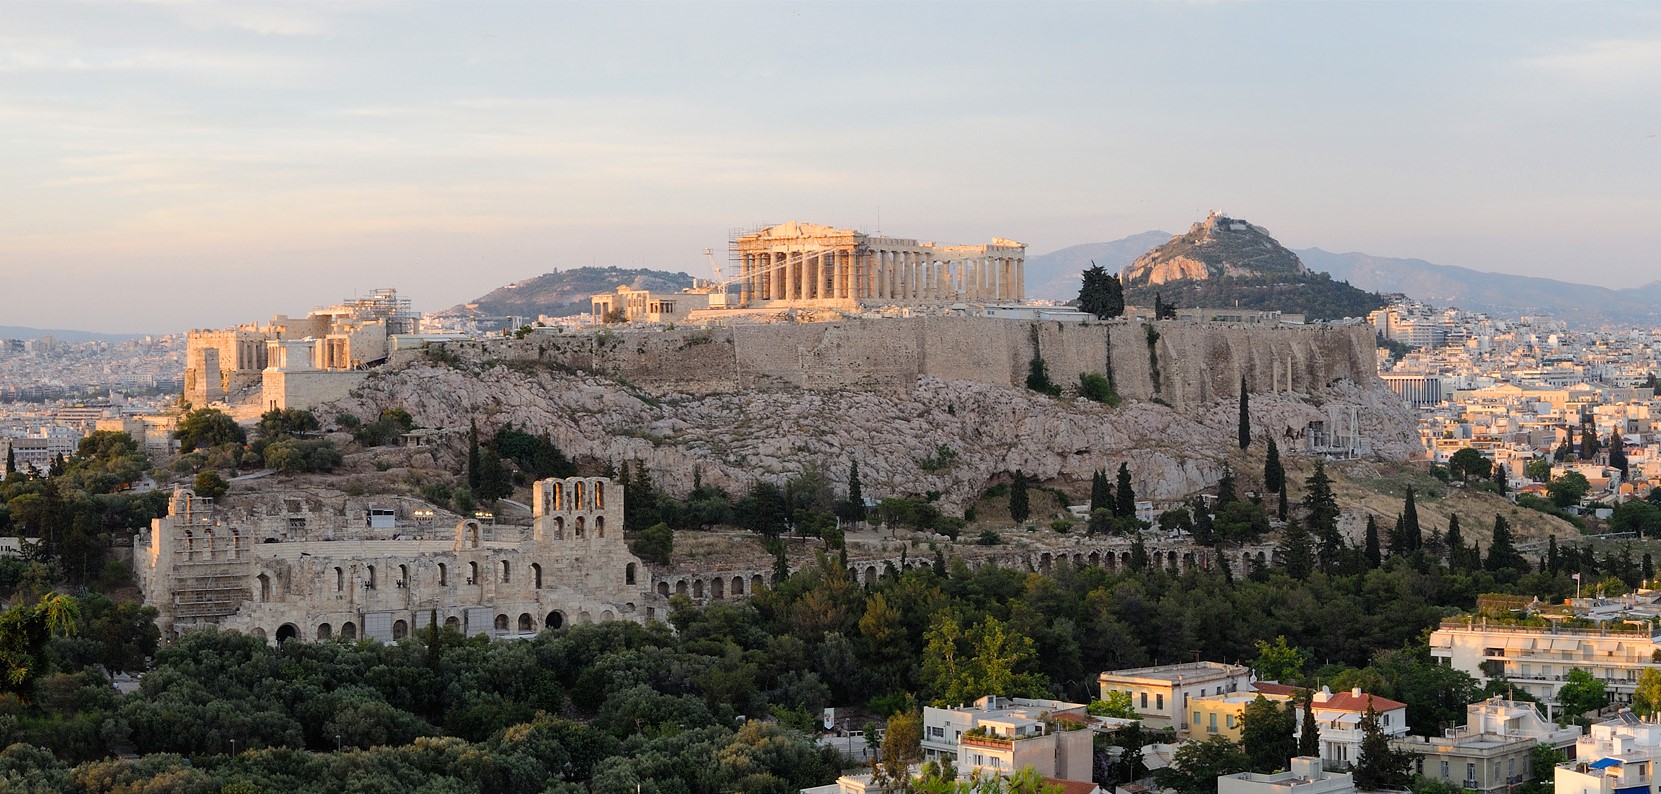 A Acrópole de Atenas com o Partenon no topo. A Atenas Antiga era uma das principais cidades-estado gregas. Uma forma de estudar essa sociedade é por meio da sua arquitetura (Foto: Christophe Meneboeuf)